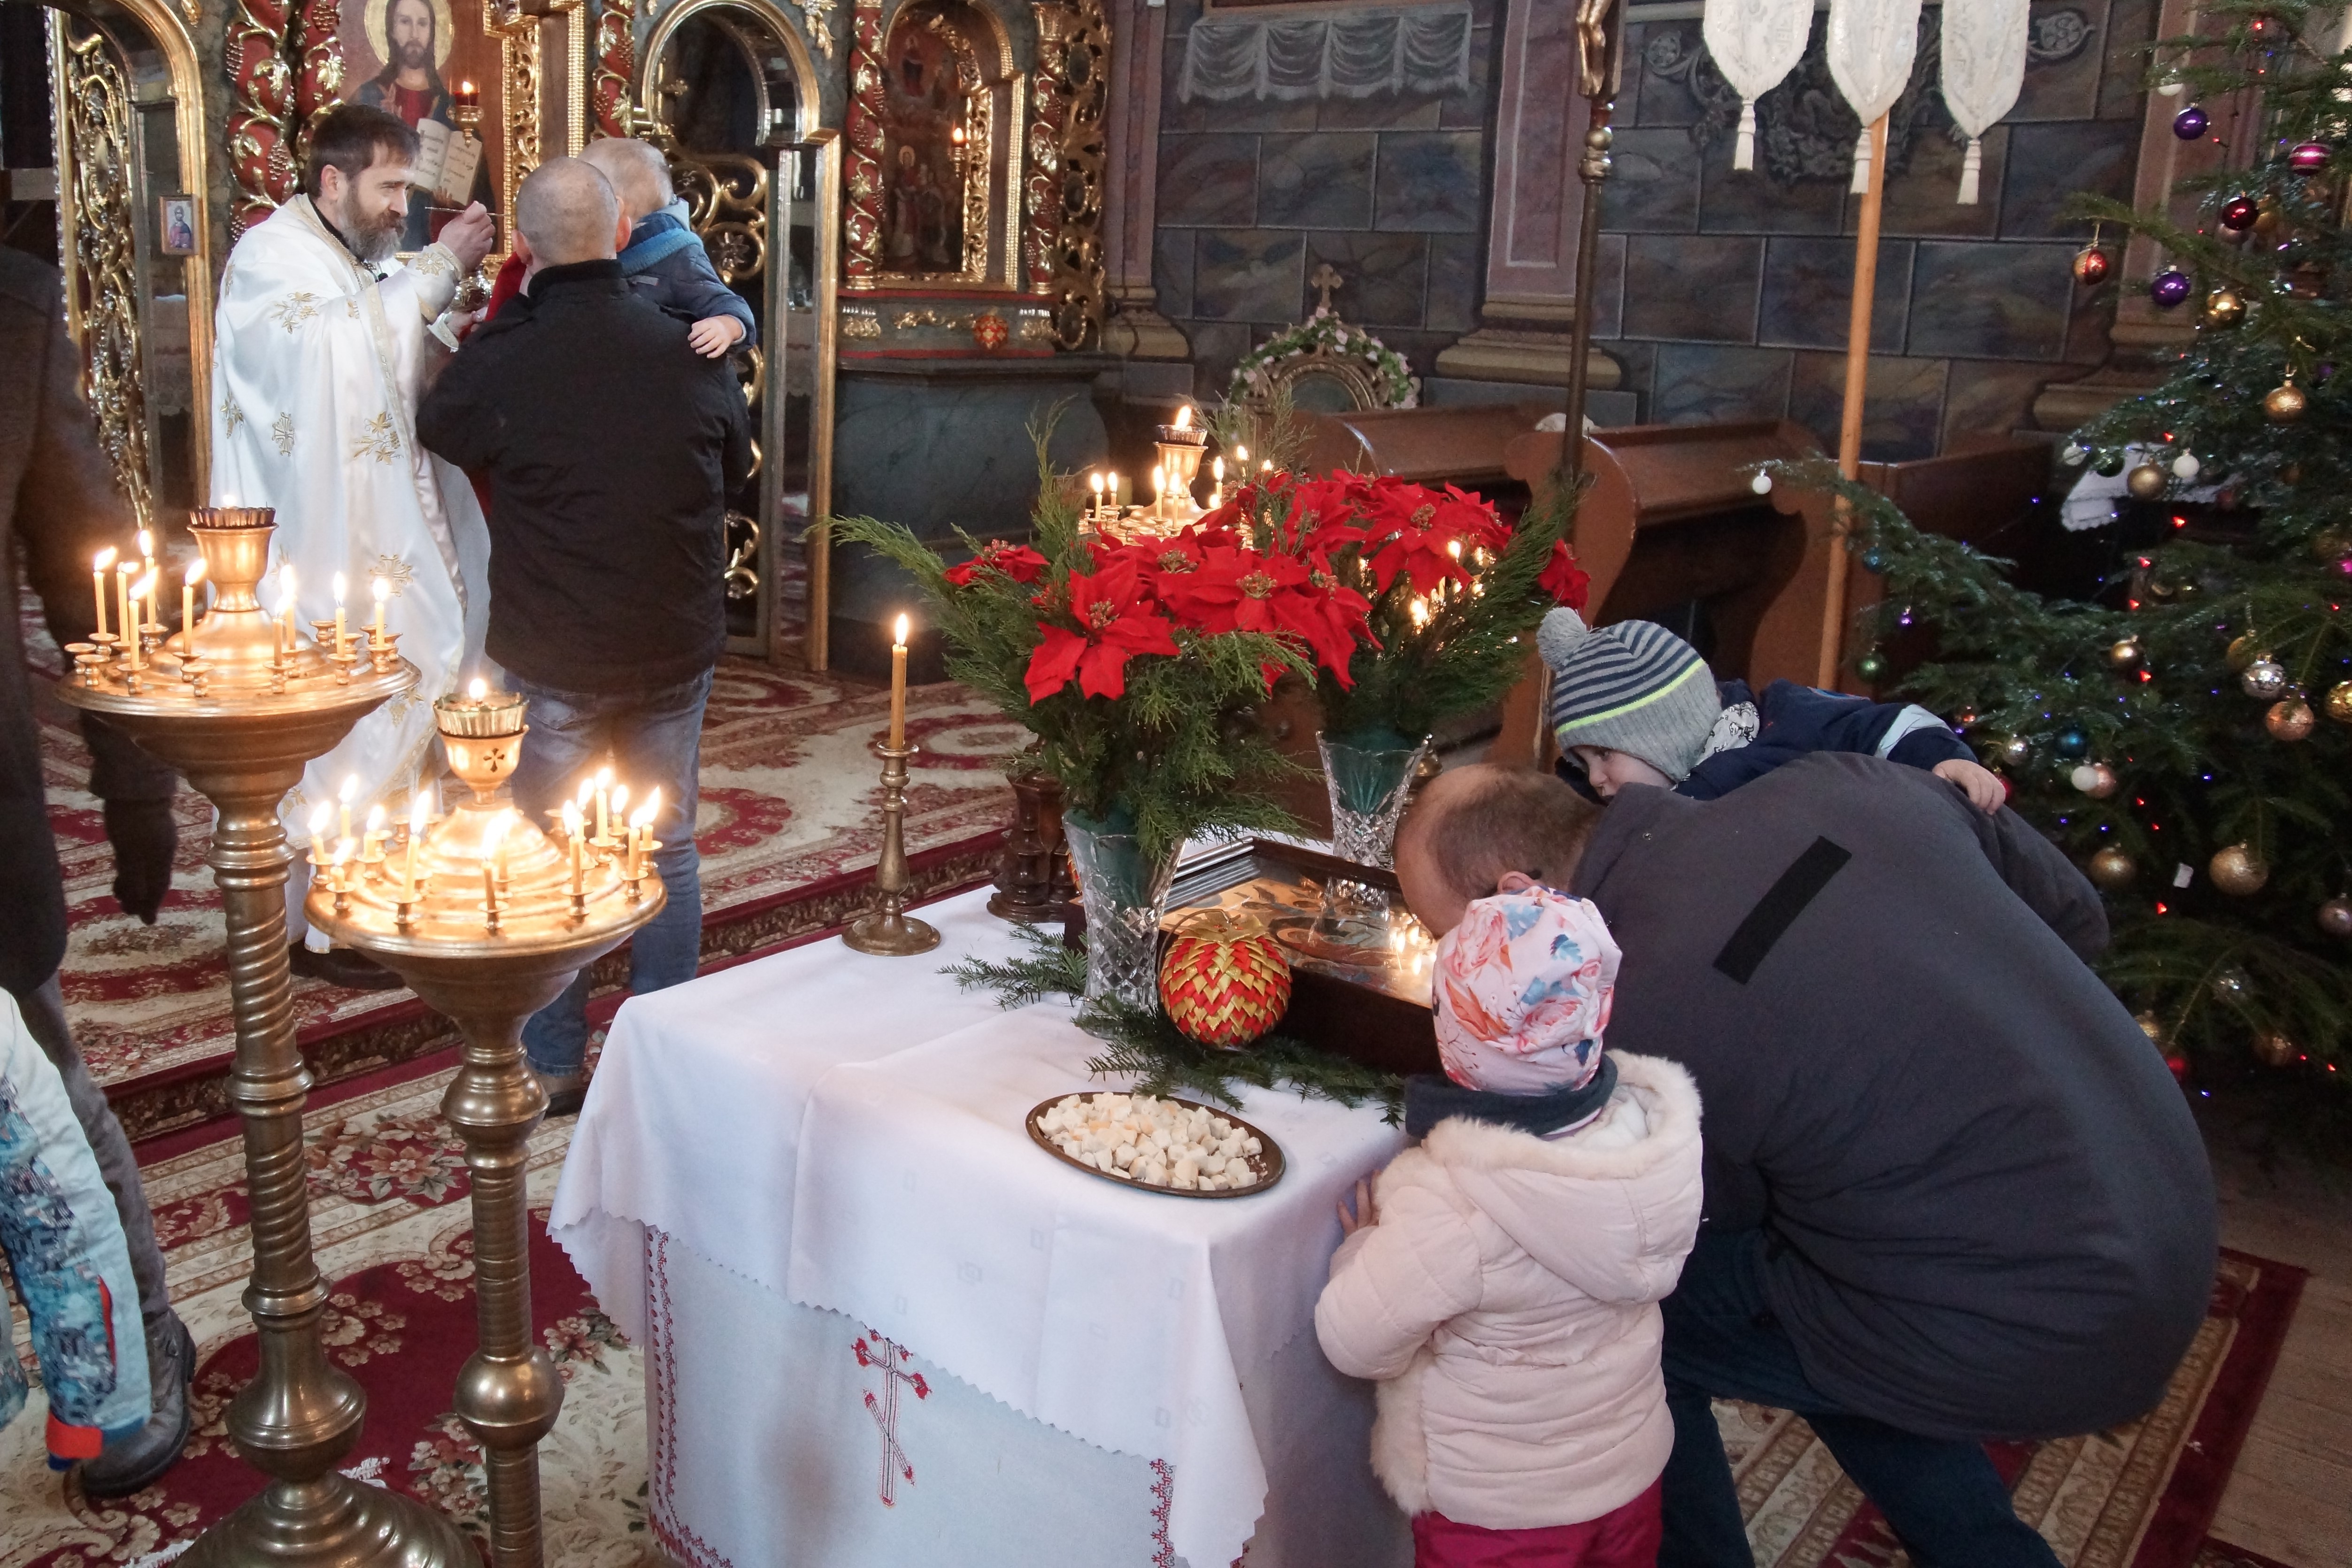 Wnętrze cerkwi. Mężczyzna z dzieckiem na rękach całuje ikonę Bożego Narodzenia leżącą na niewielkim stoliku.